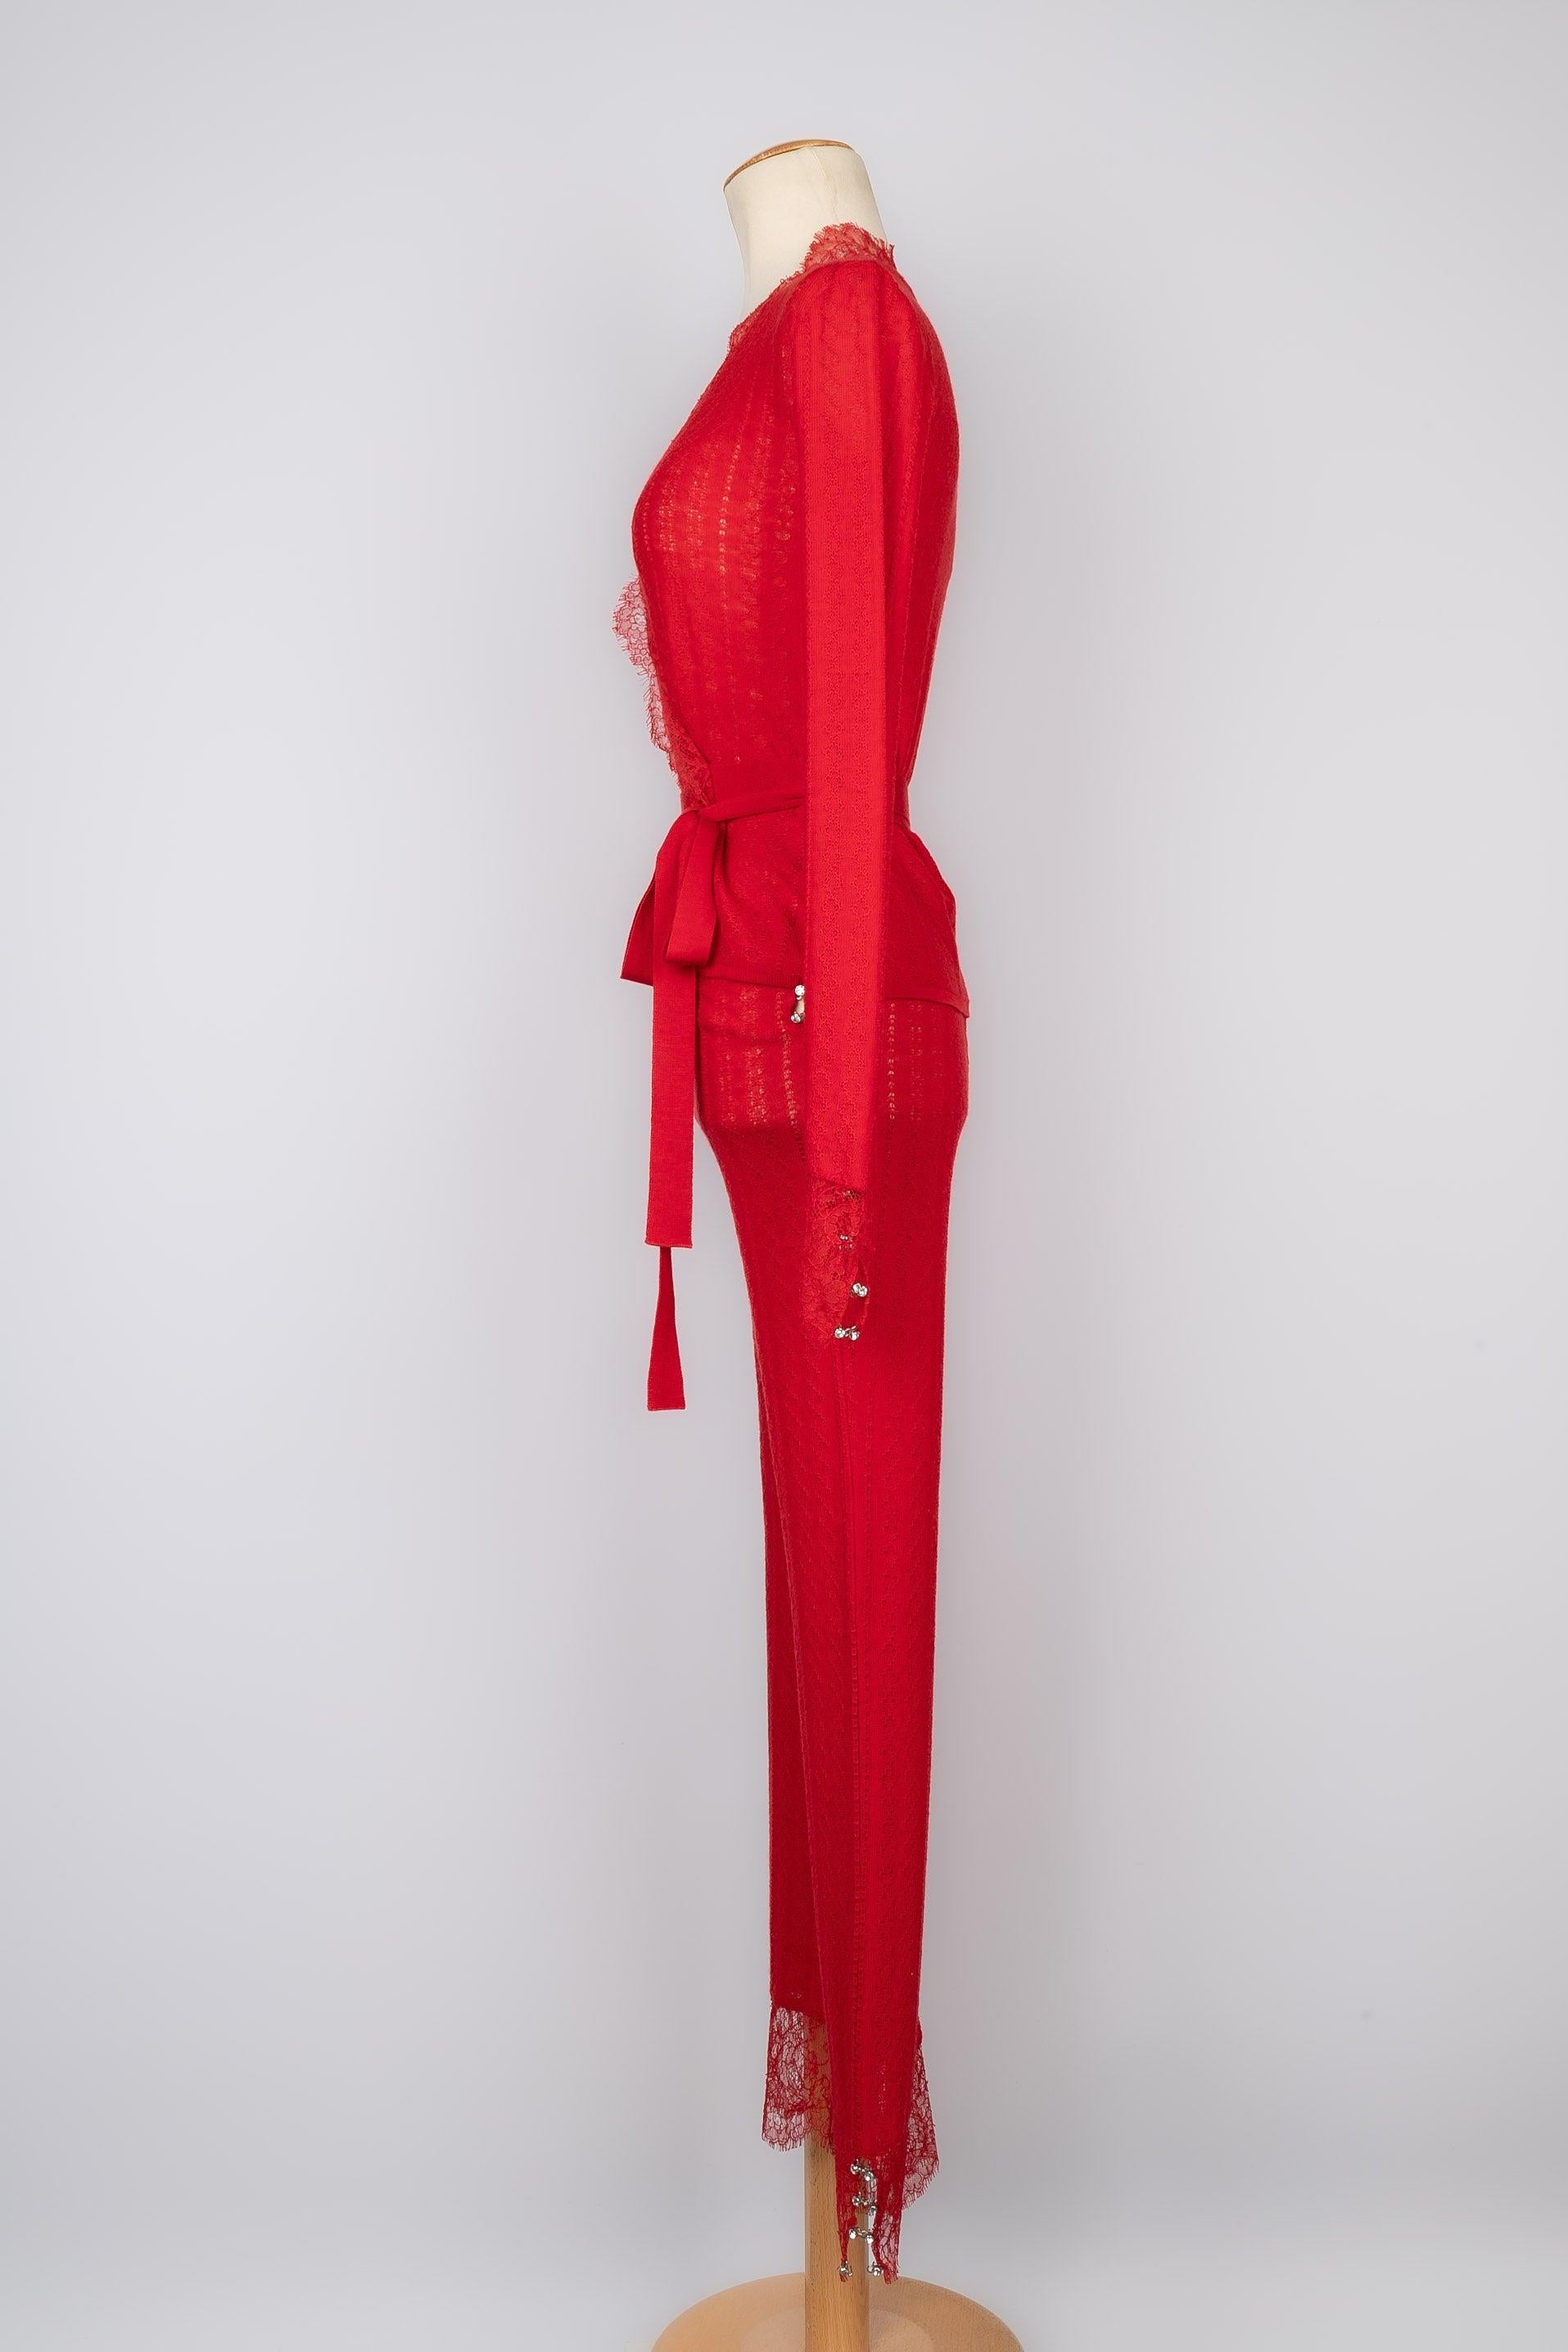 Dior -  (Fabriqué en Italie) Ensemble en laine et cachemire rouge composé d'un haut enveloppant et d'un pantalon. Taille 38FR.

Informations complémentaires :
Condit : Très bon état.
Dimensions : Haut enveloppant : Largeur des épaules : 39 cm -